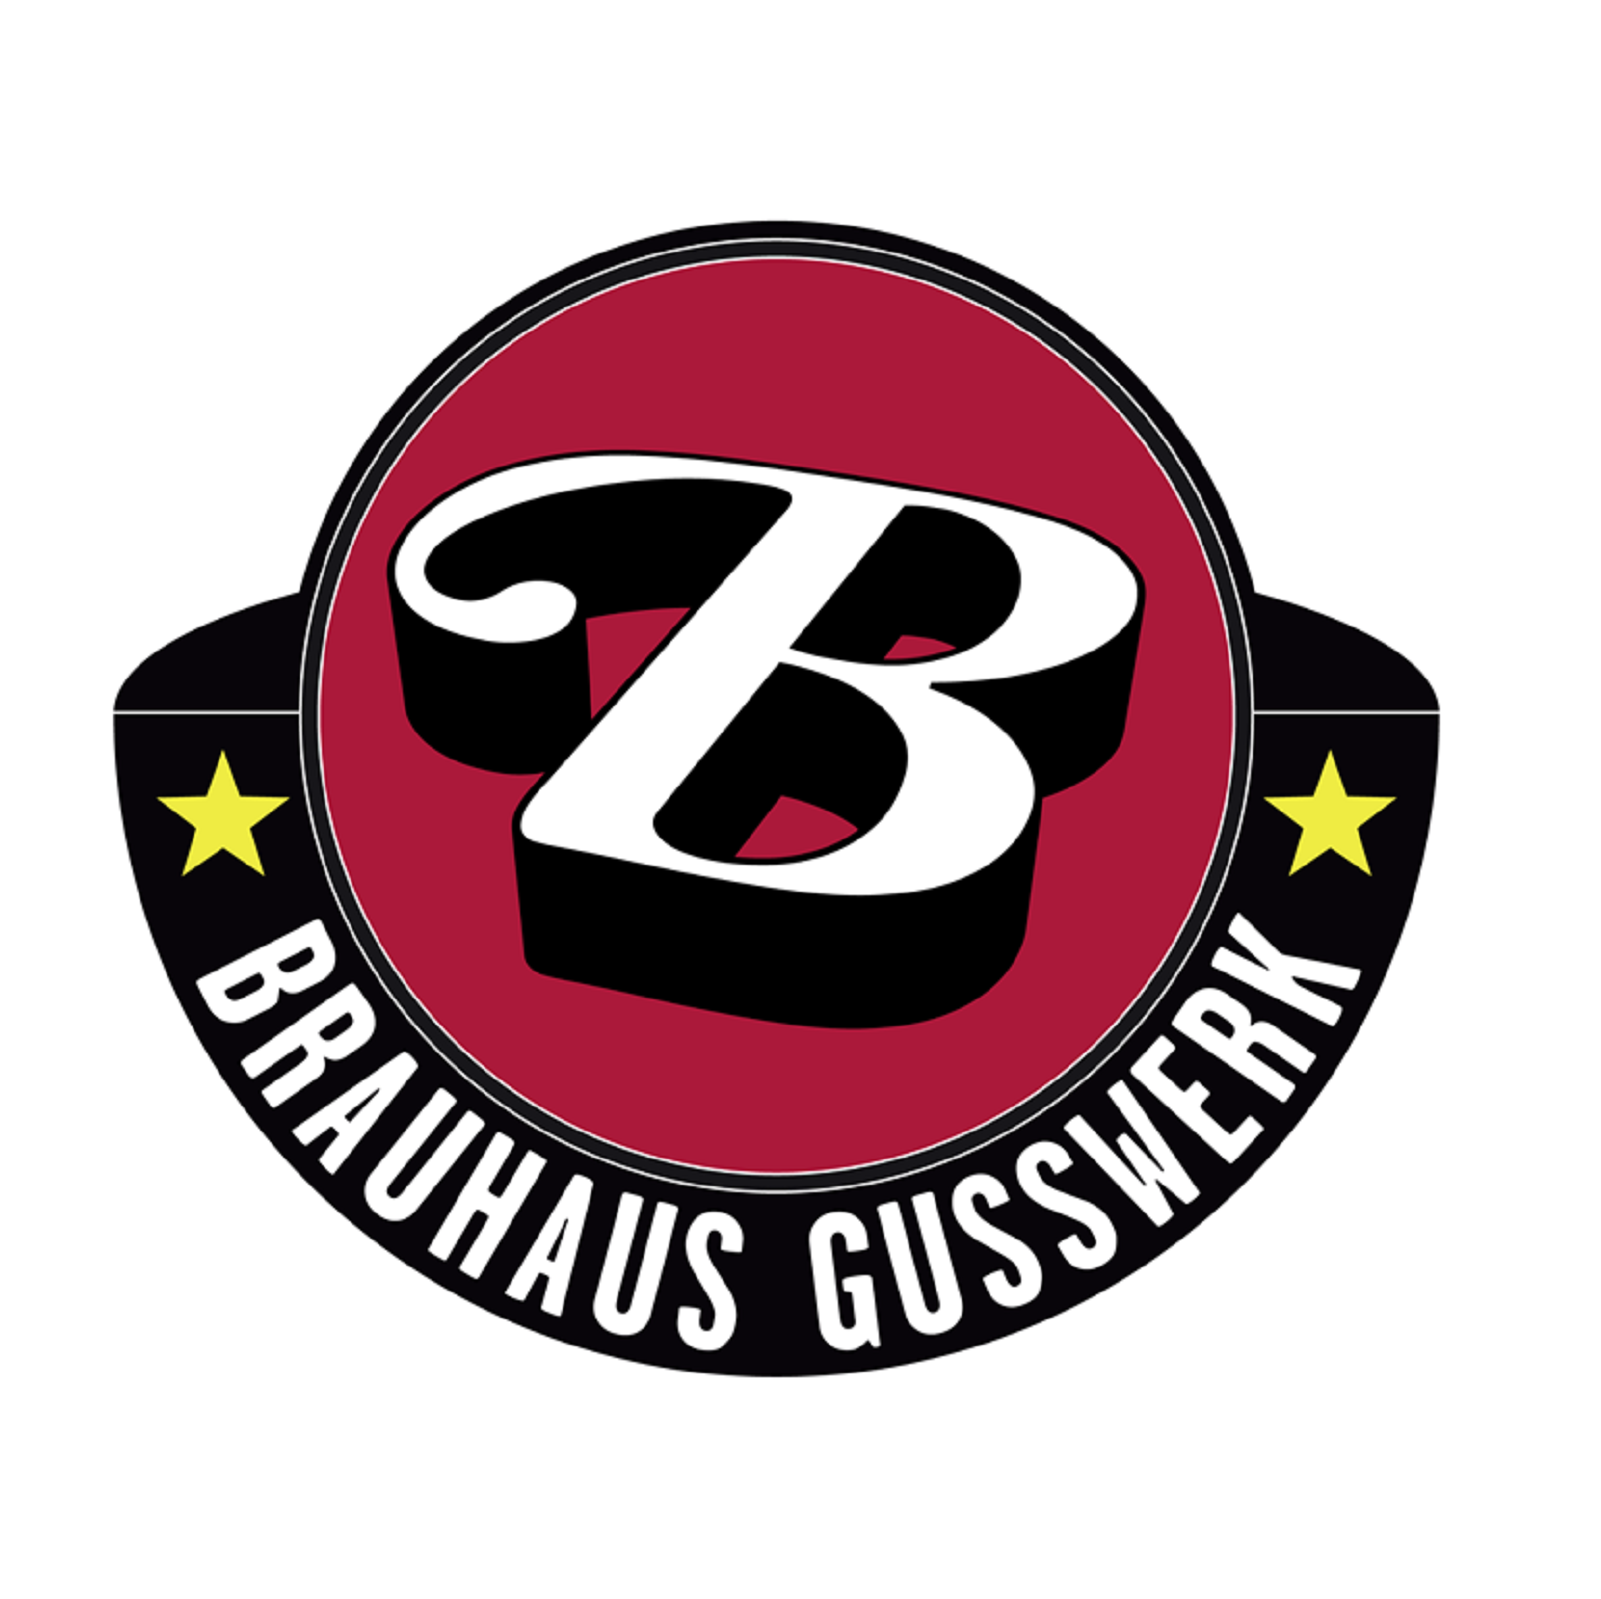 B-Logo_Brauhaus-Gusswerk